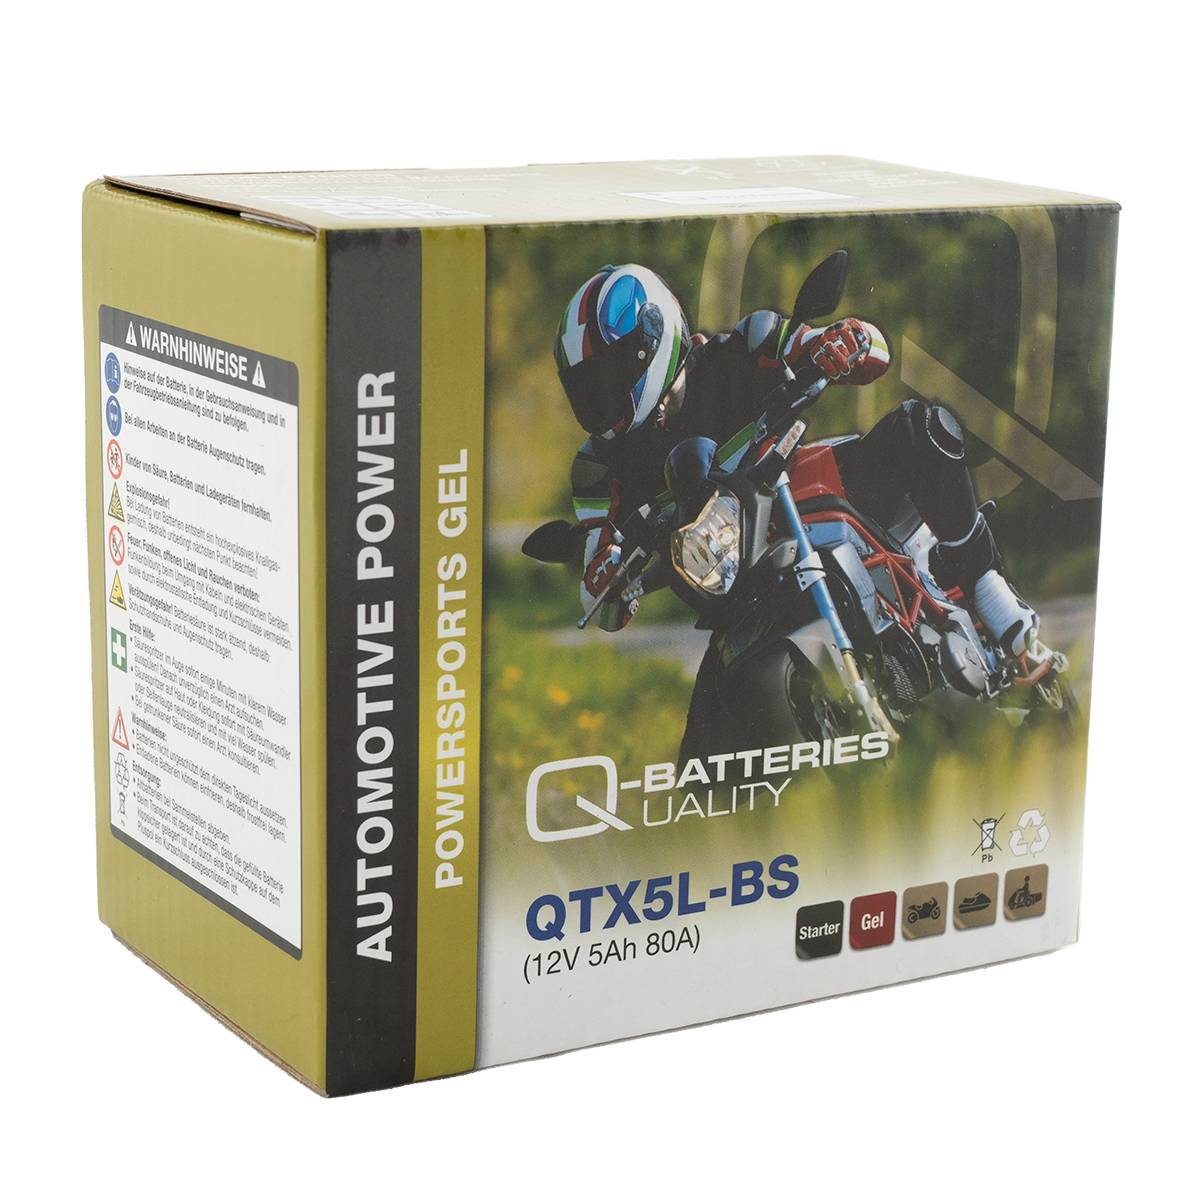 Q-Batteries QTX5L-BS Gel Motorradbatterie 12V 4,5Ah 70A QTX5L-4 50412